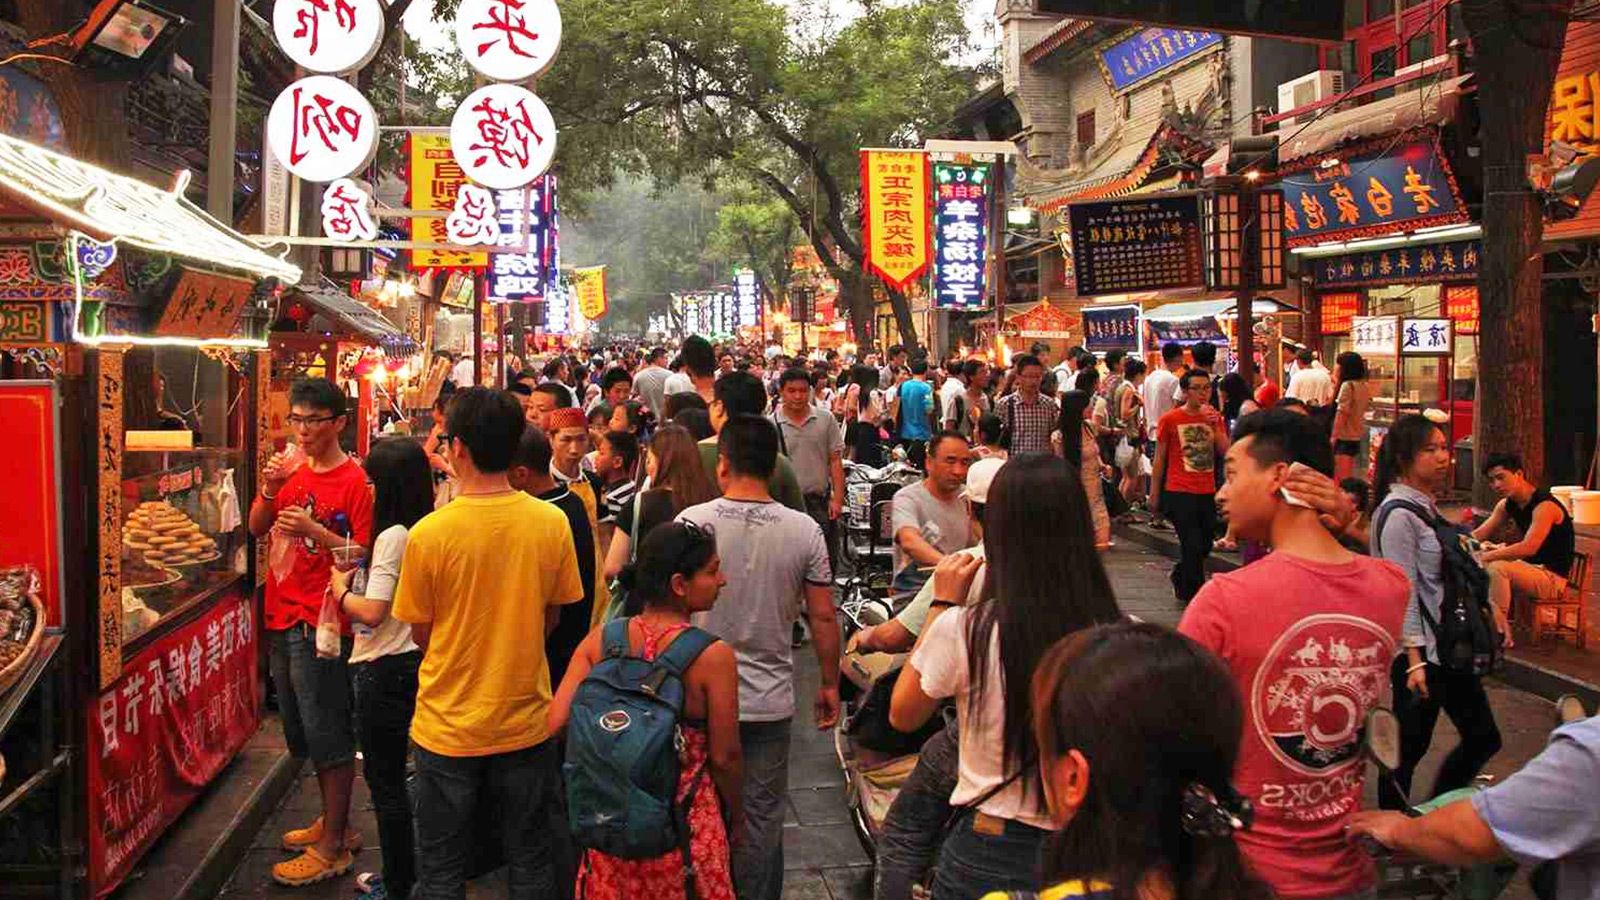 خیابان وانگ فو جینگ یکی از دیدنی ترین مراکز خرید پکن